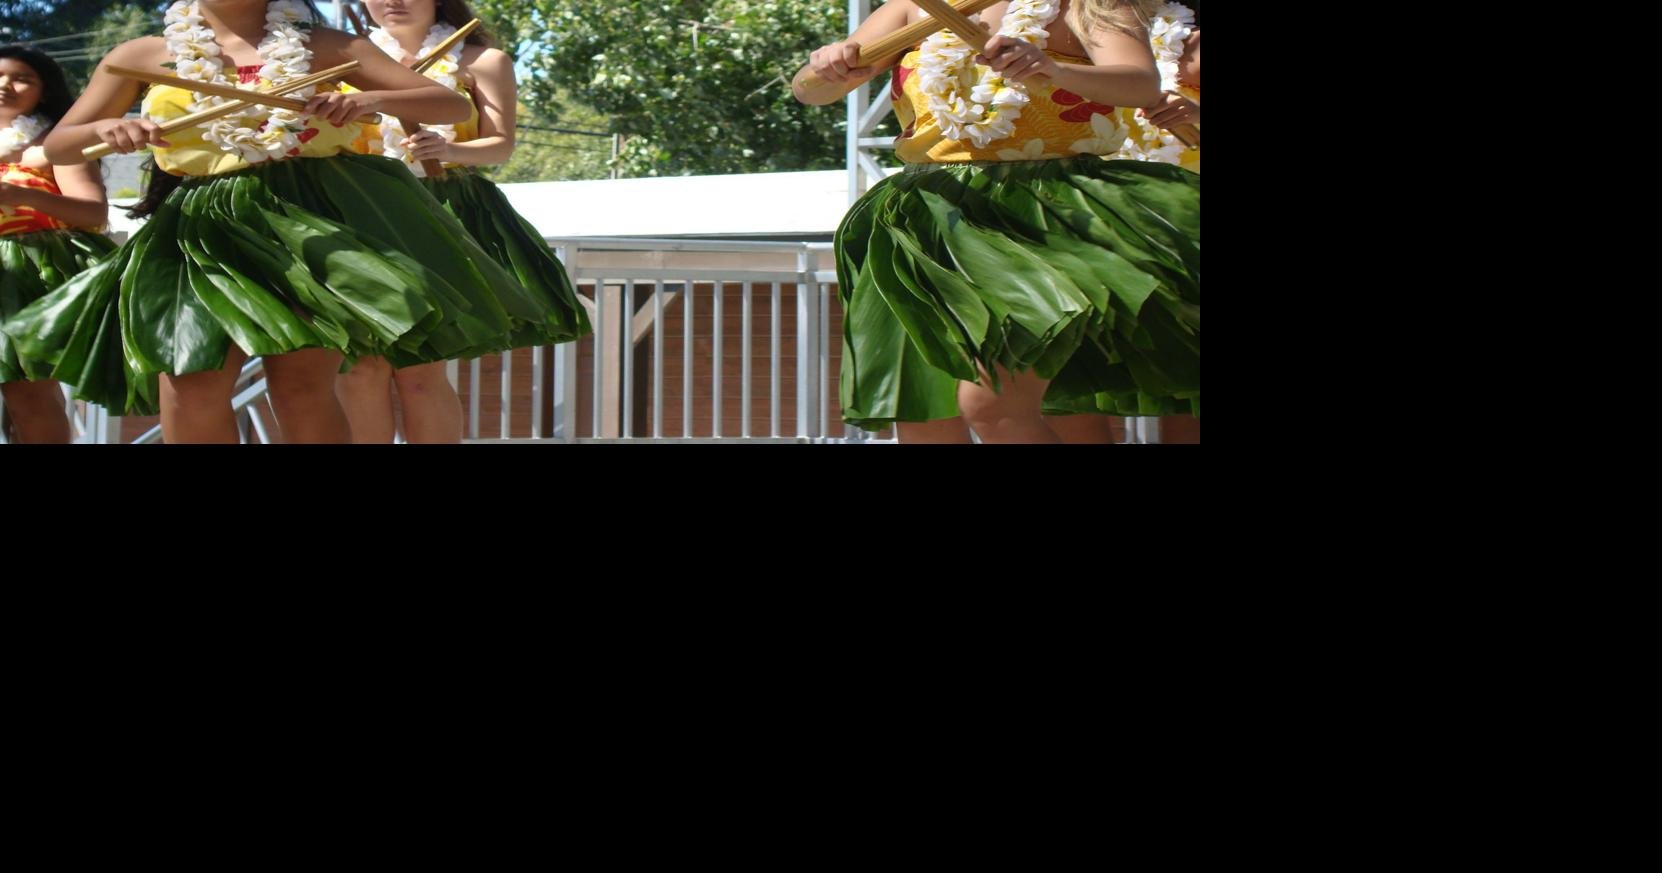 Napa's Aloha Festival celebrates Hawaiian culture